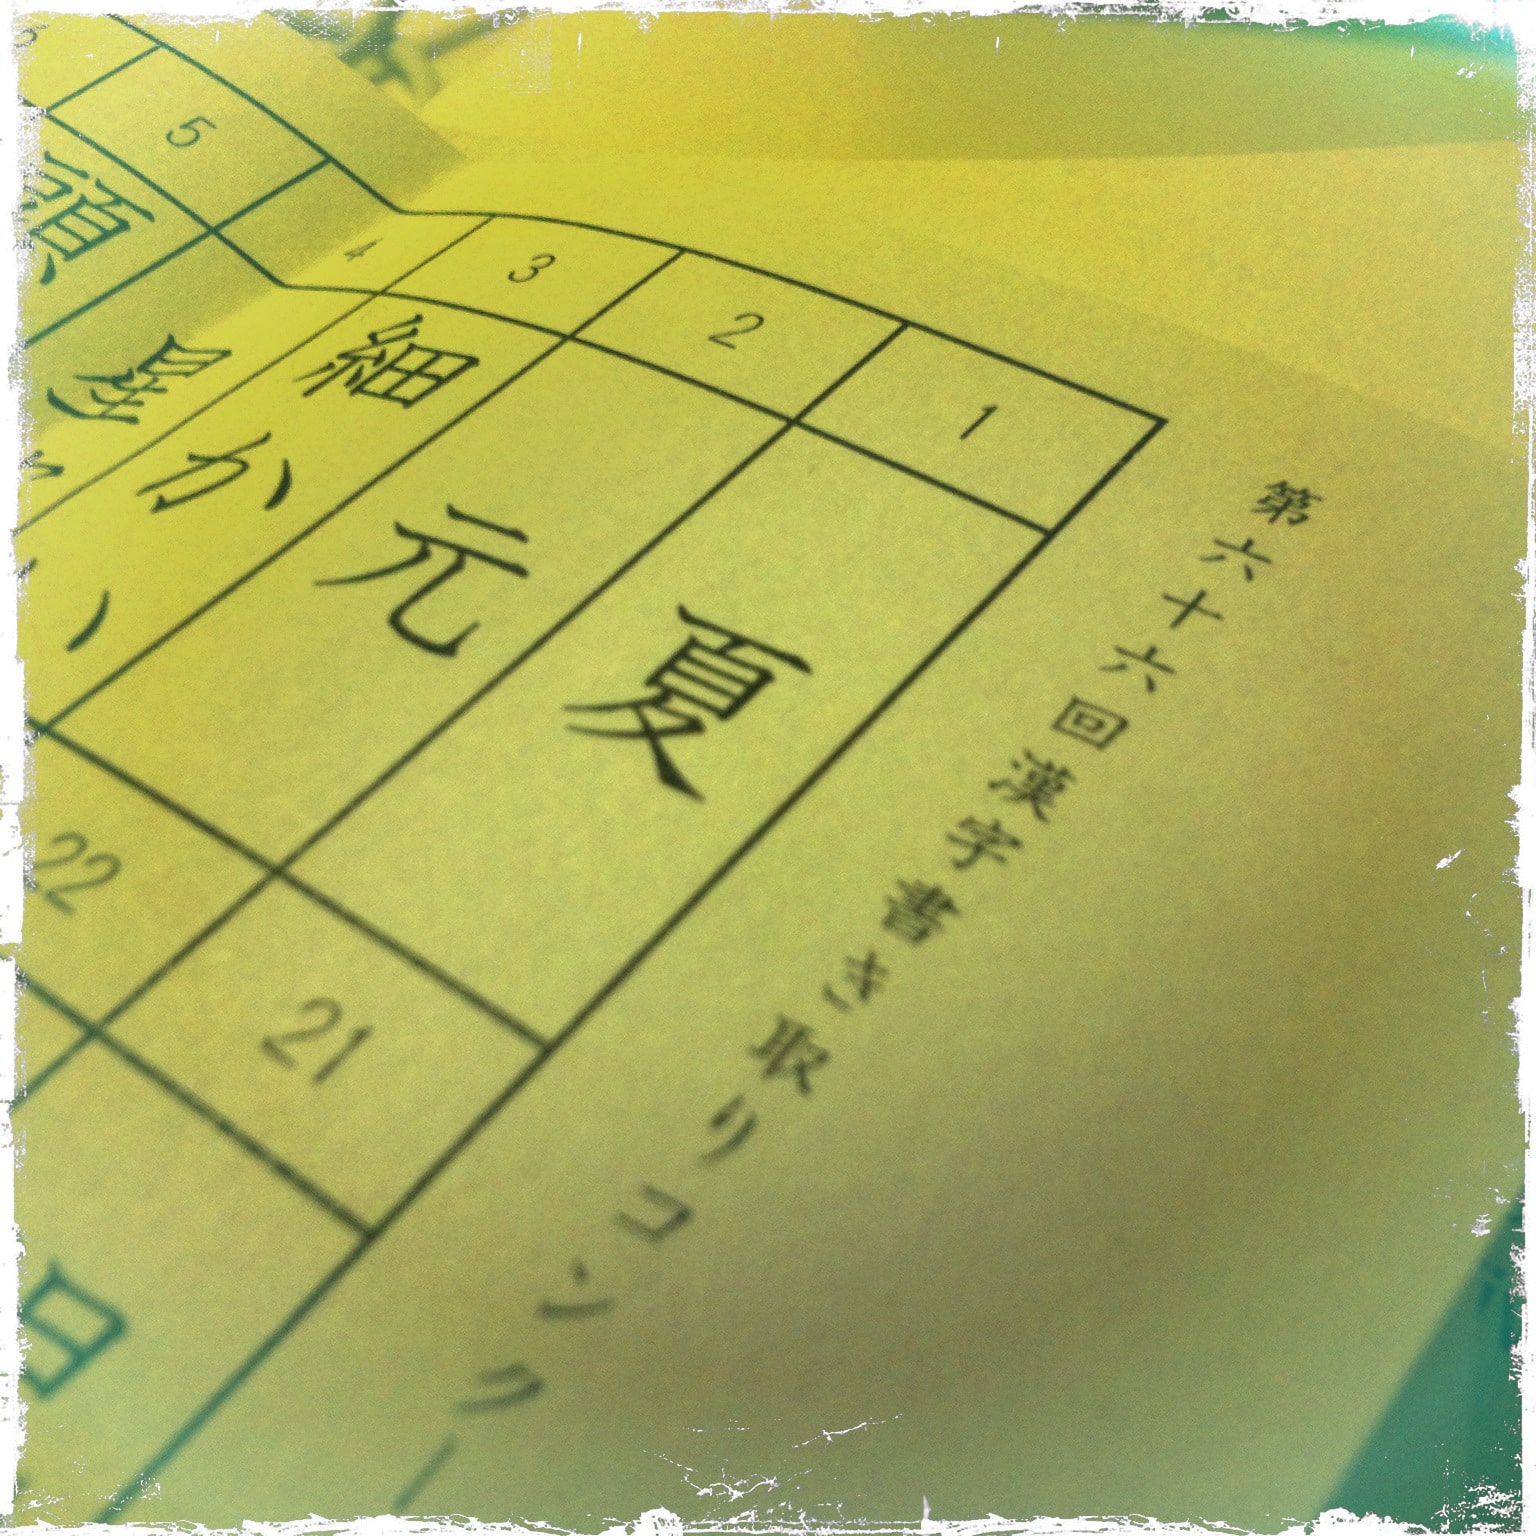 忙しい学期の中、盛り上がりをみせた漢字コンクールでした。